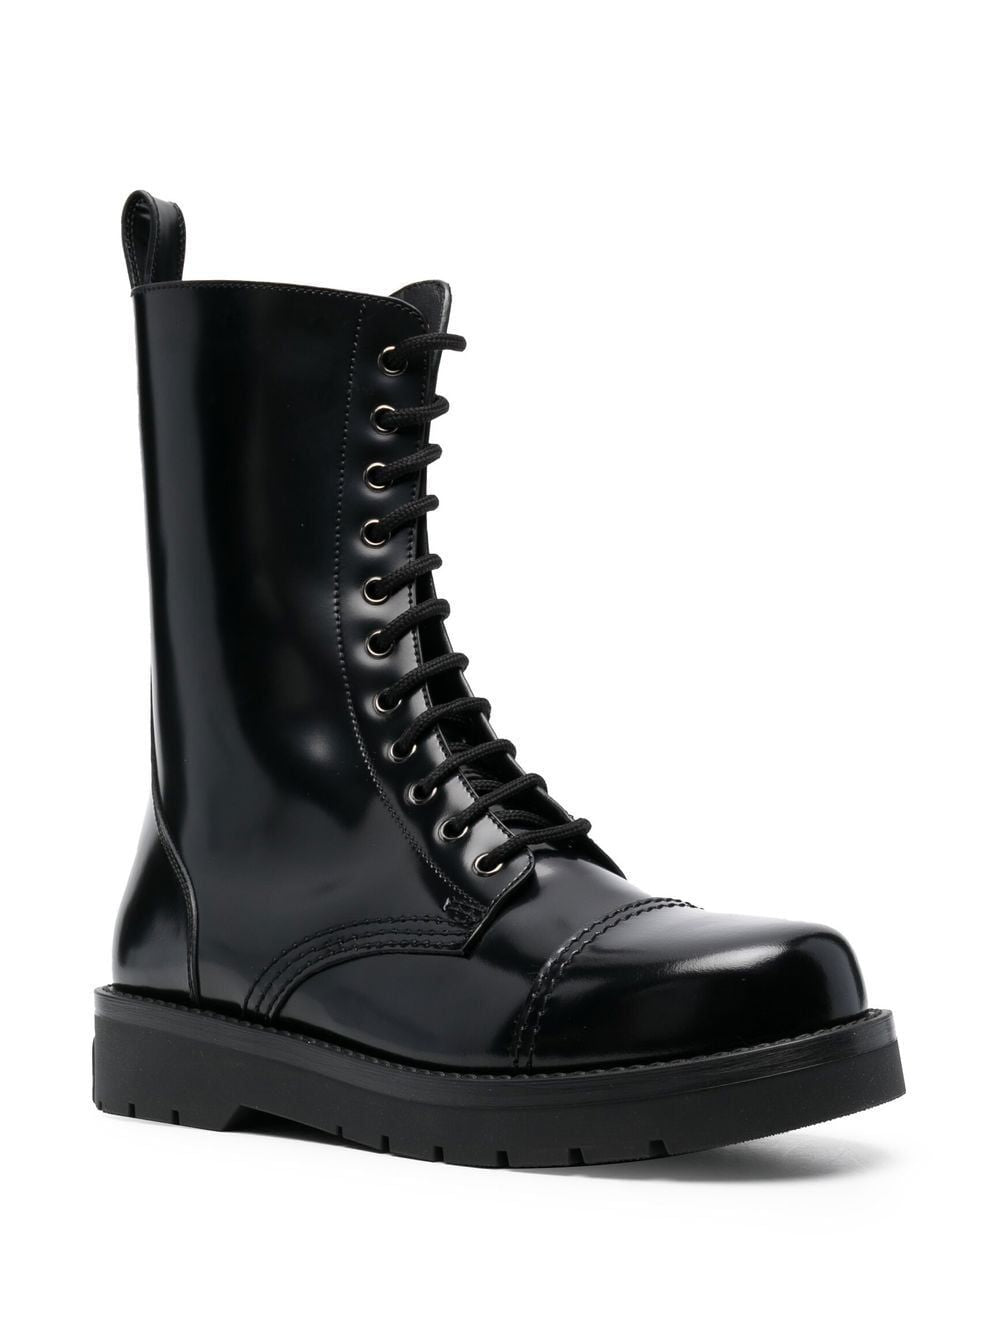 Giày Combat màu đen cổ điển cho nam - Bộ sưu tập FW22